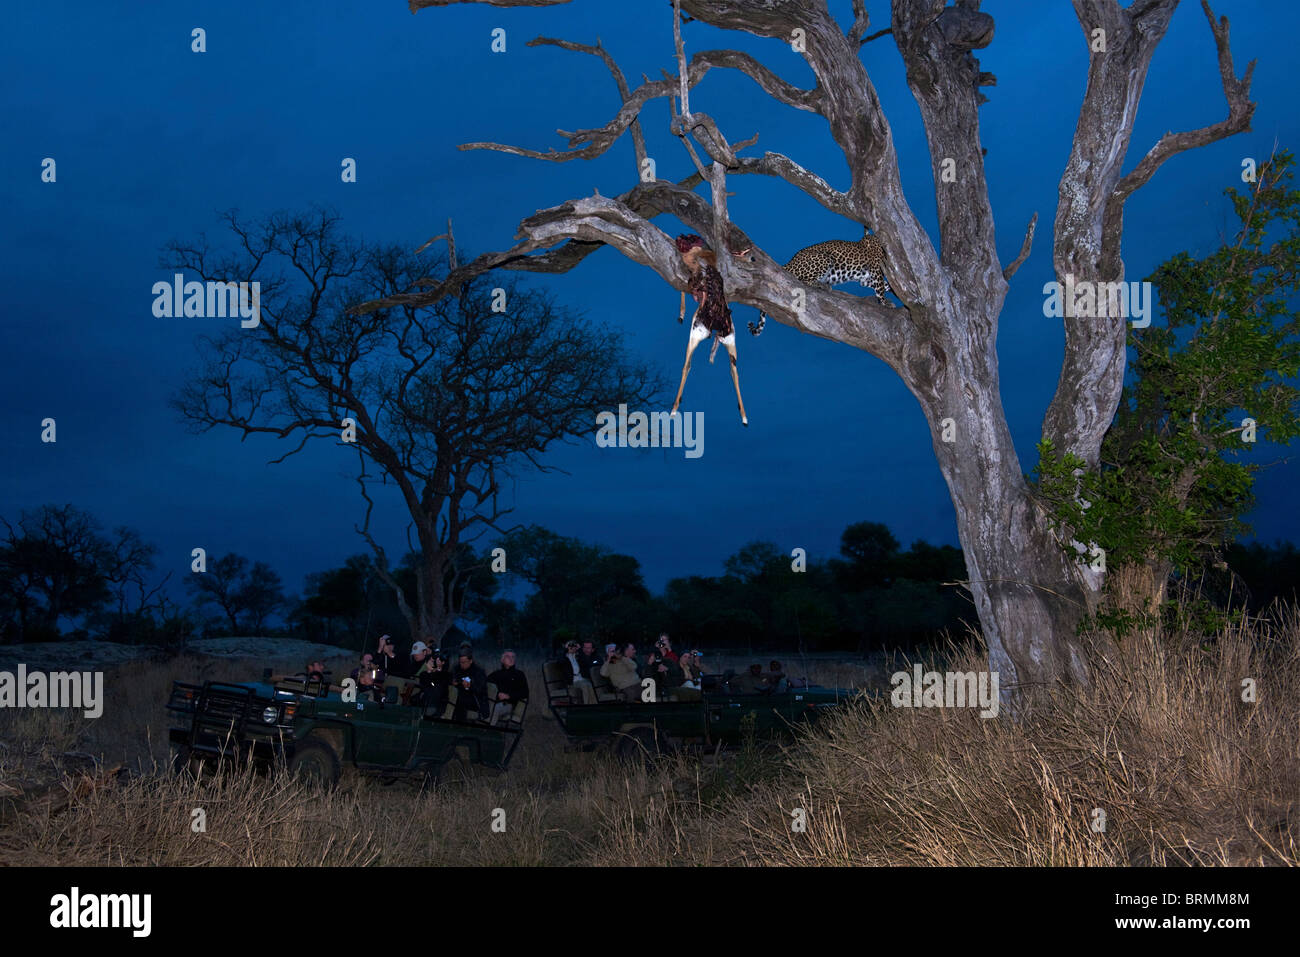 Touristen in einem offenen Fahrzeug anzeigen einen Leoparden in einem Baum in der Dämmerung Stockfoto